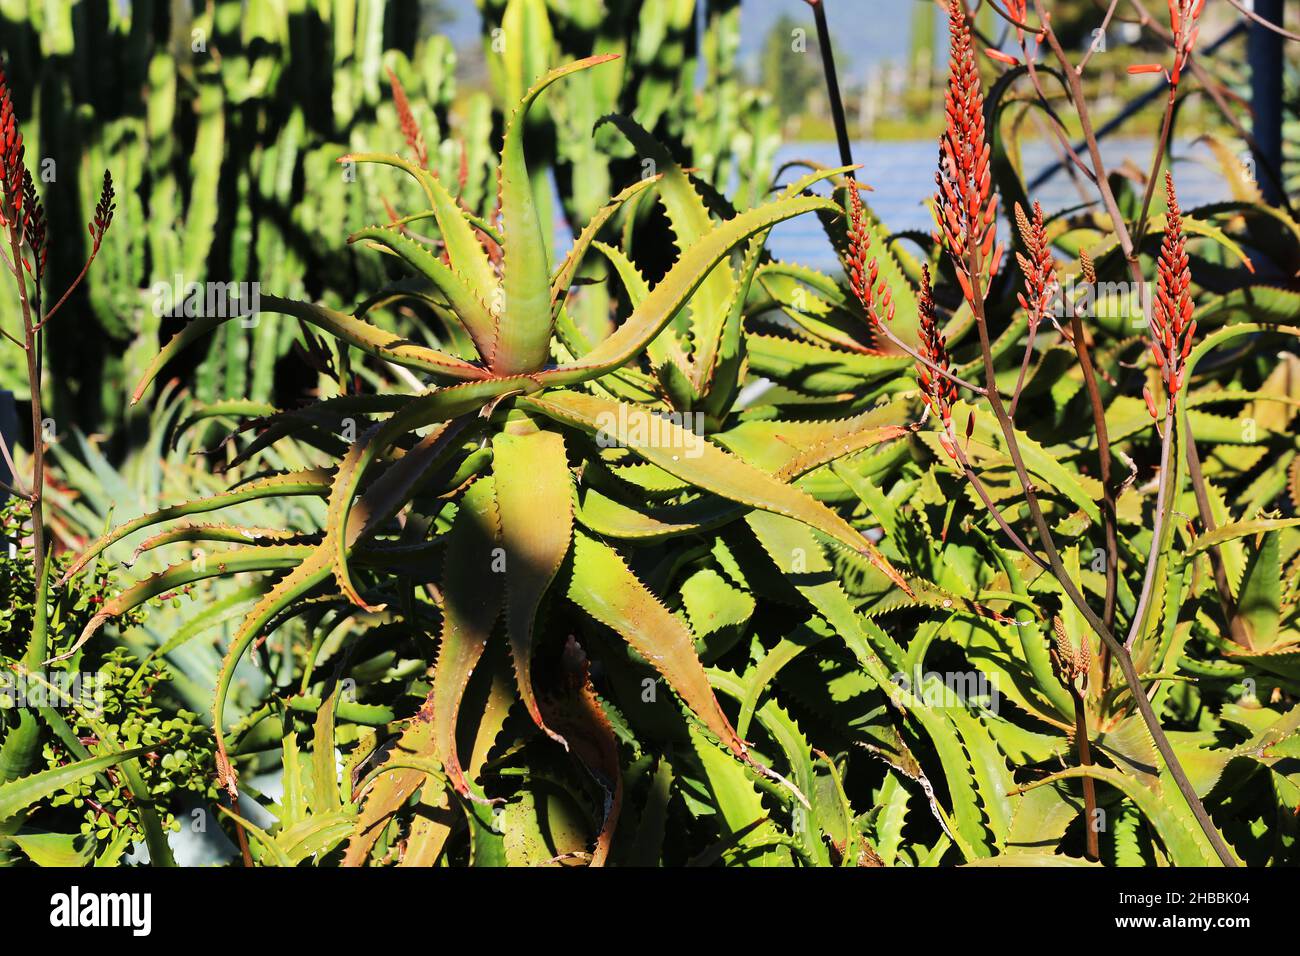 Kaktus, Meran, die Gärten von Schloss Trauttmansdorff  eröffnen exotische Gartenlandschaften, mit stacheligen Kakteen  Südtirol, Dolomiten, Italien Stock Photo